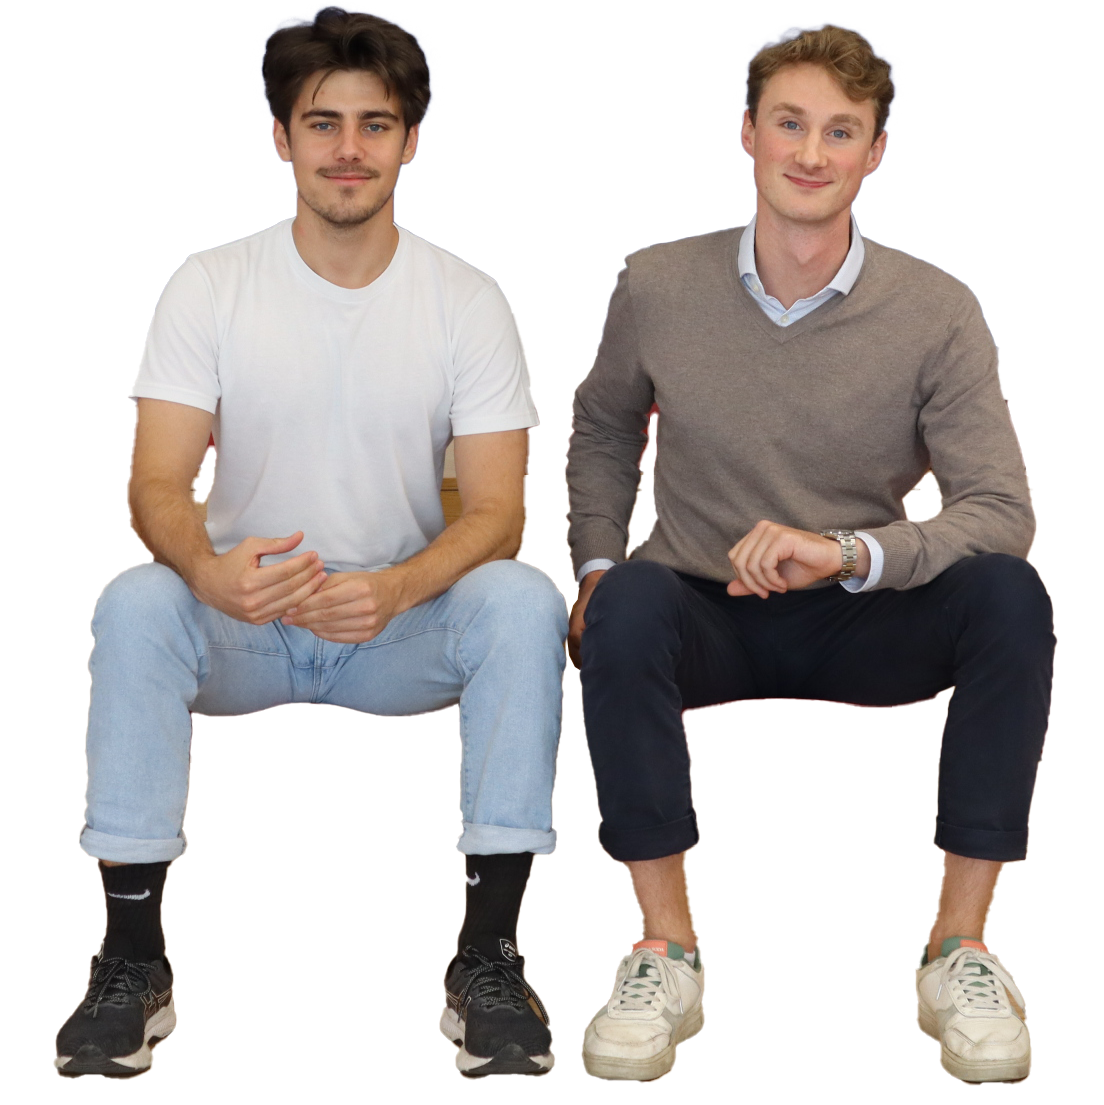 Bildbeschreibung: Die Gründer von Scavenger AI sitzen nebeneinander